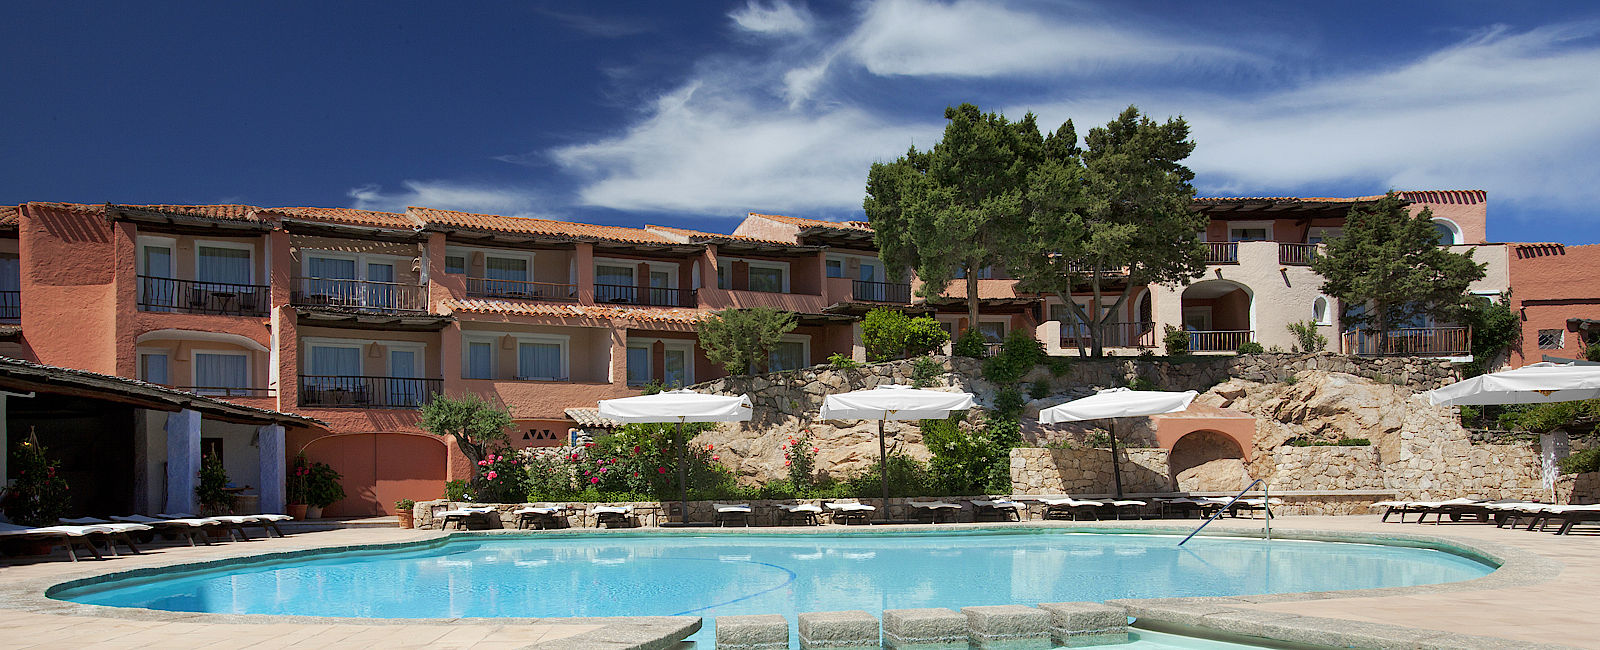 HOTELTEST
 Cervo Hotel, Costa Smeralda Resort 
 Luxushotel auf Sardininen - Fischerdorf vom Feinsten 